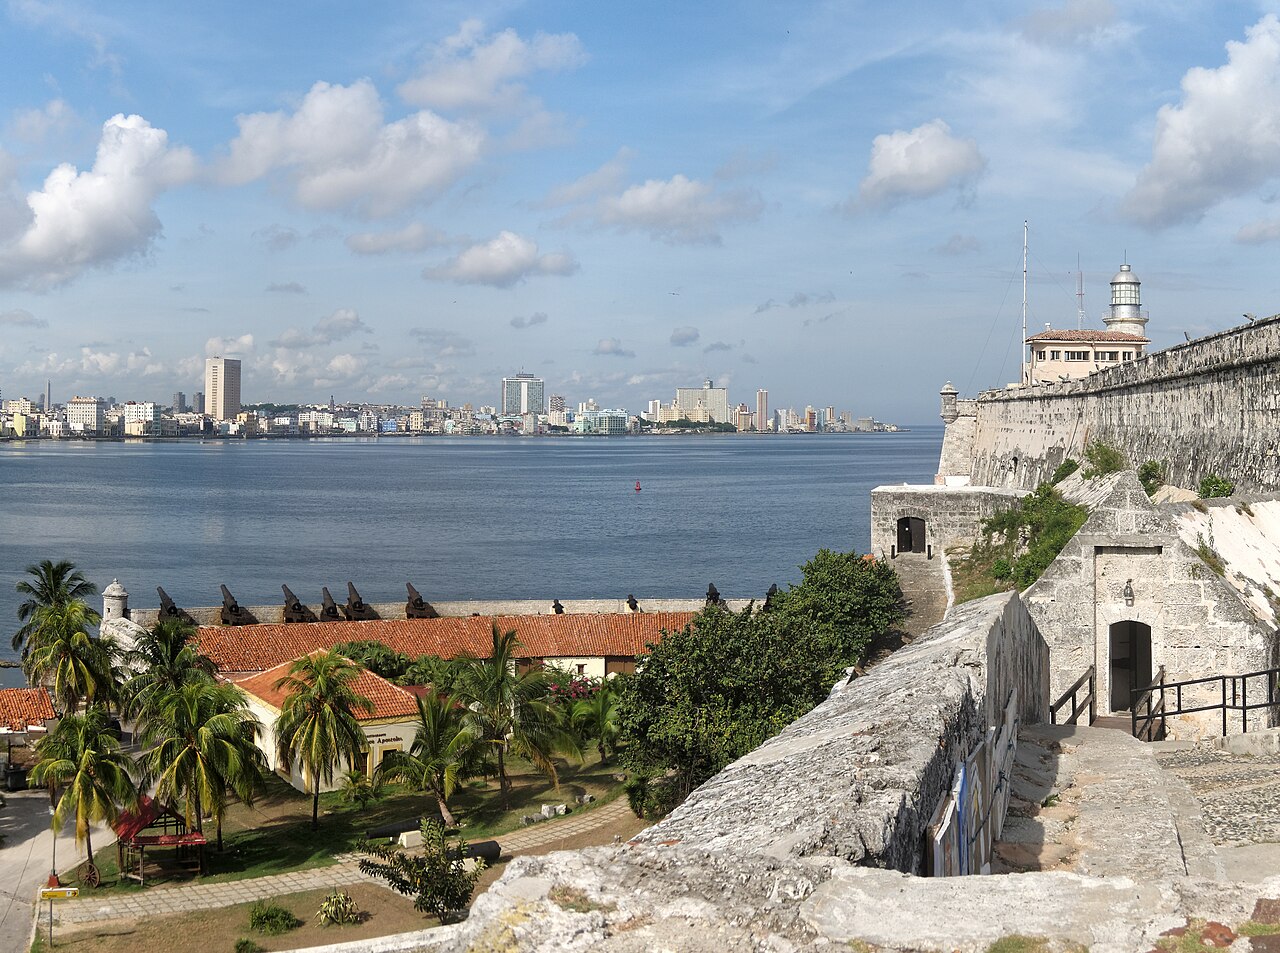 Morro Castle, Havana . Cuba